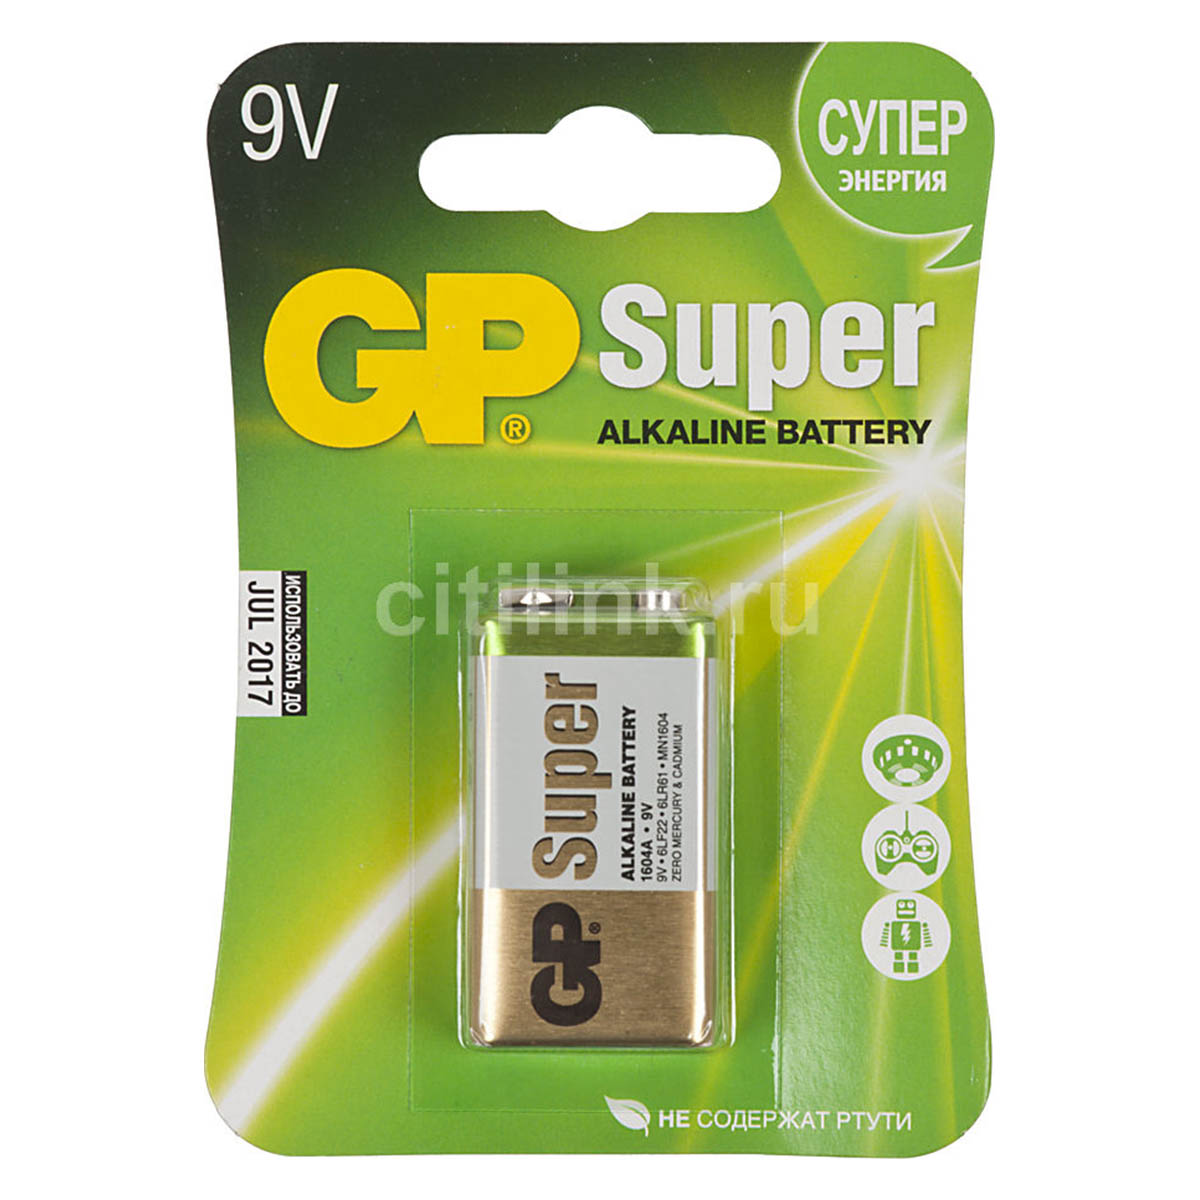 Батарейка GP Super Крона 6F22 Alkaline 9V